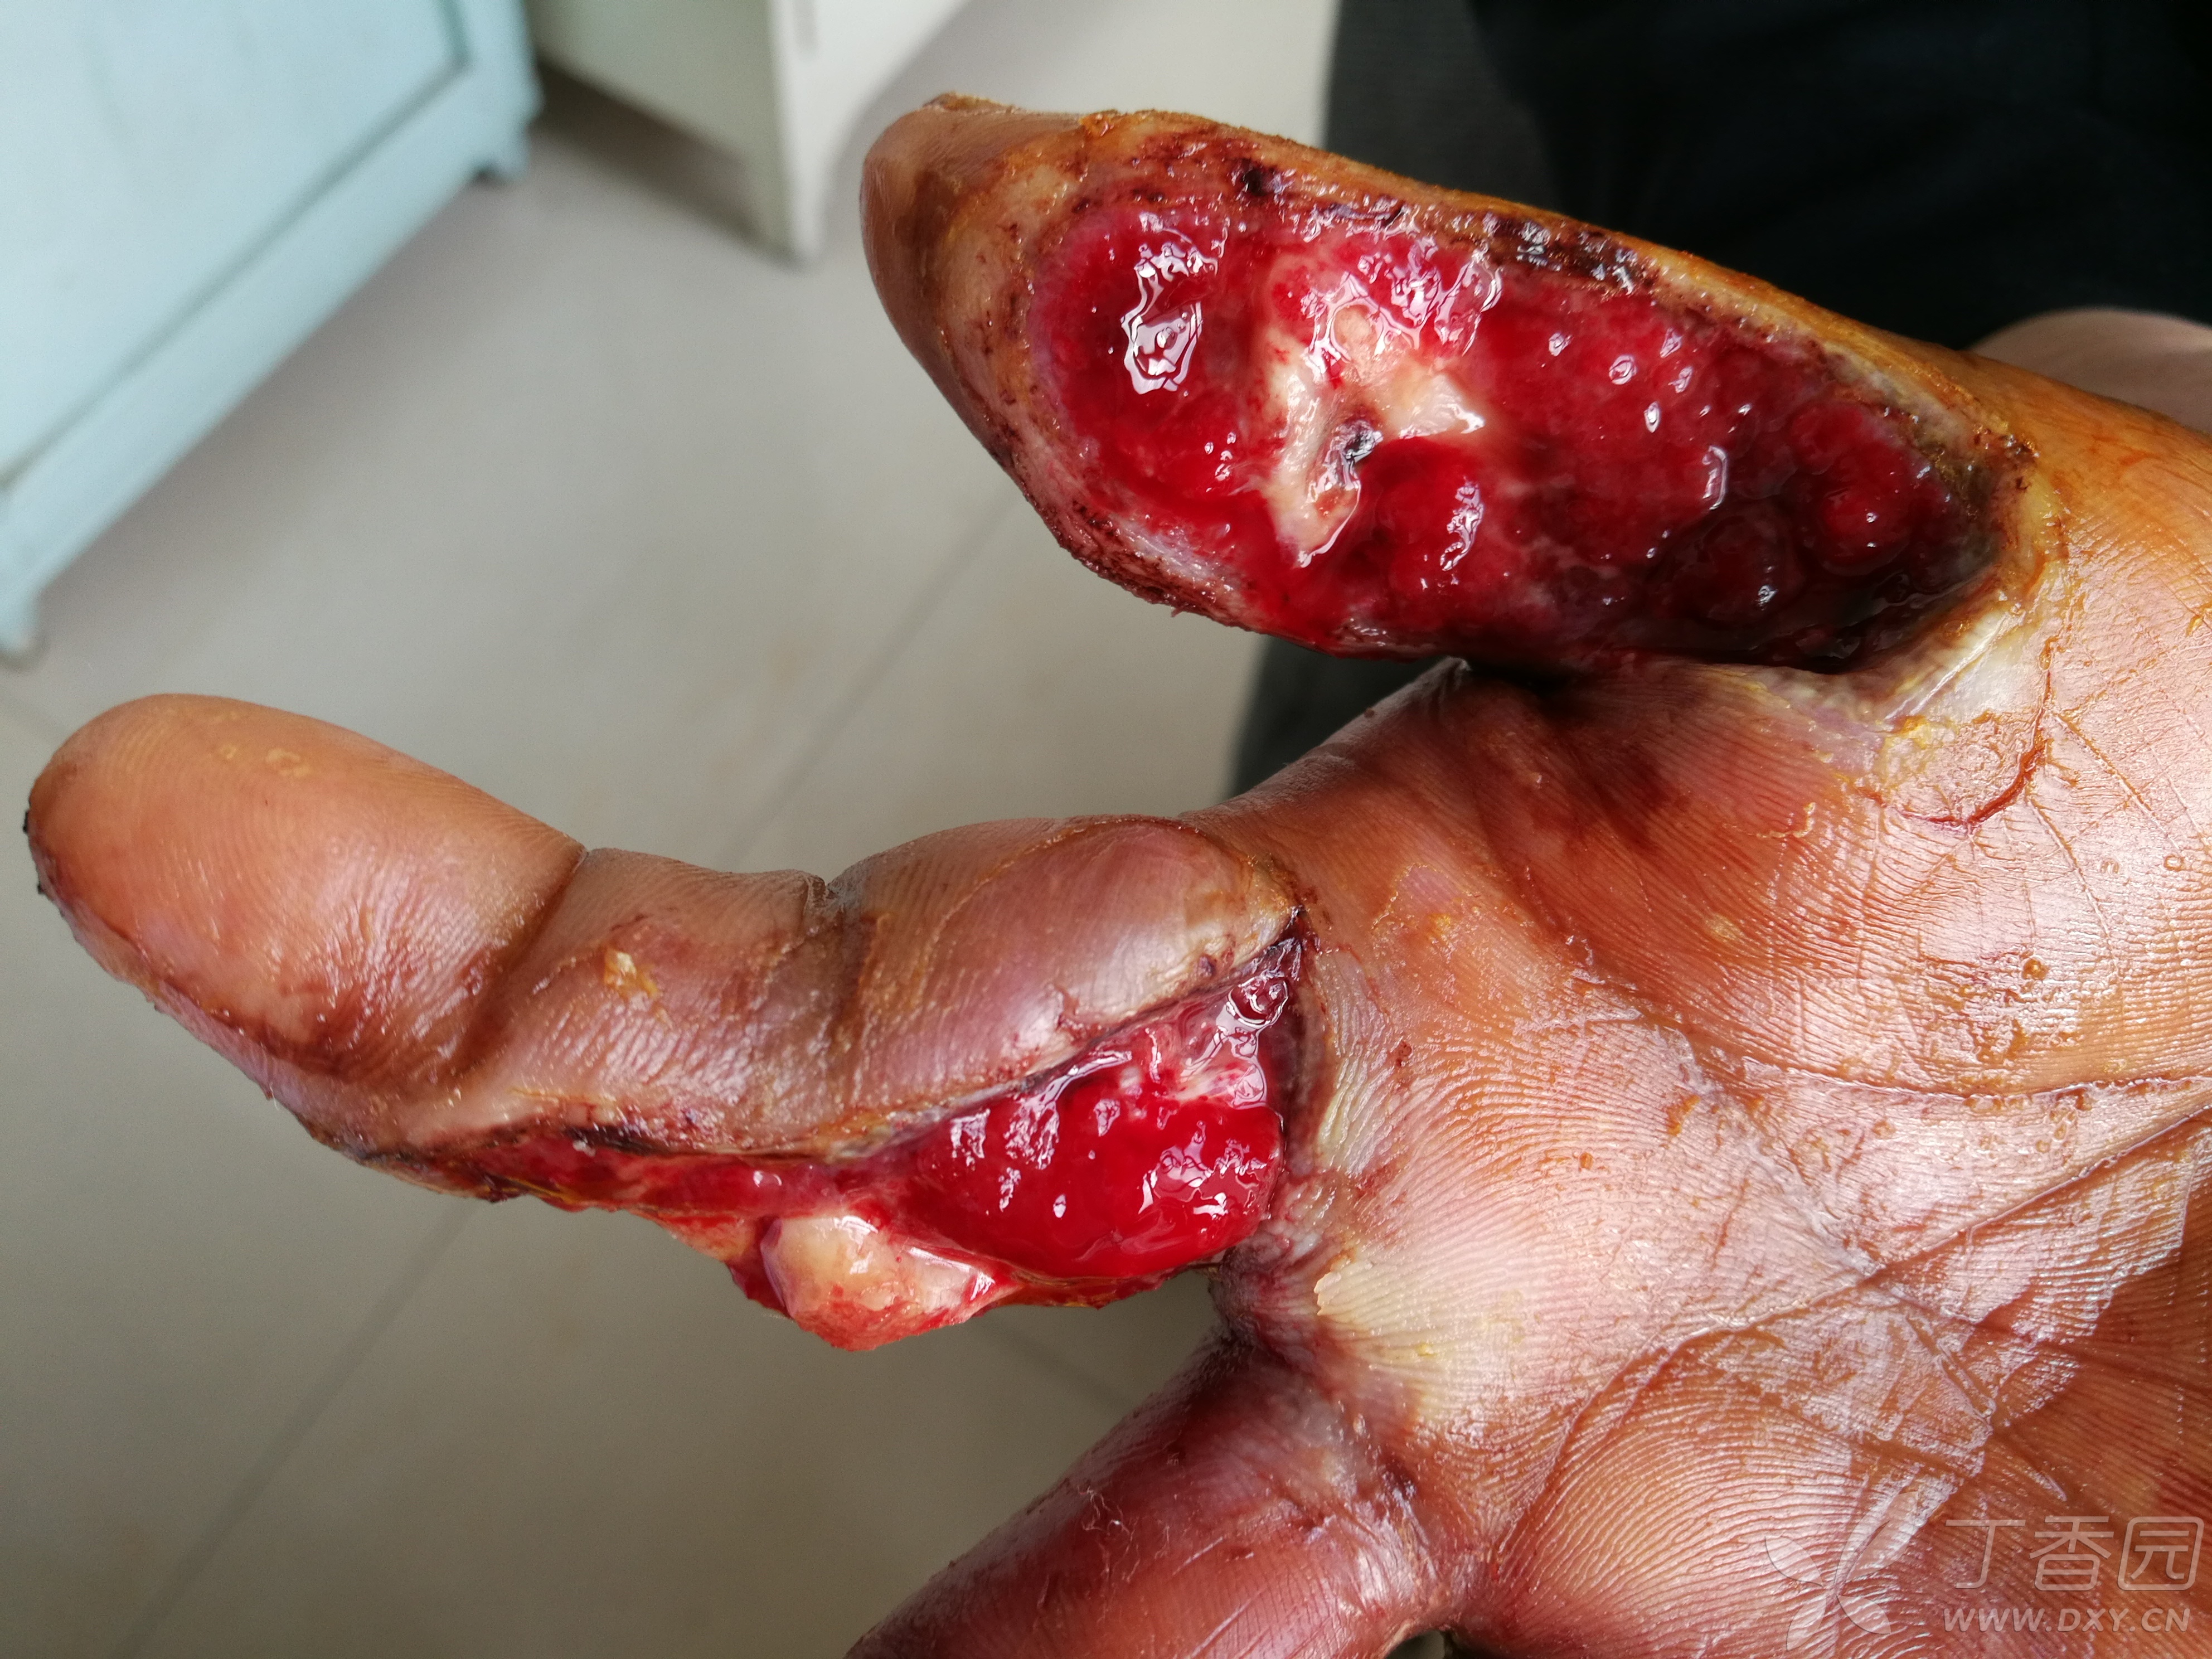 岁 简要病史:3周前右手拇,食指被玉米剥皮机挤压伤,伤后在外院行清创